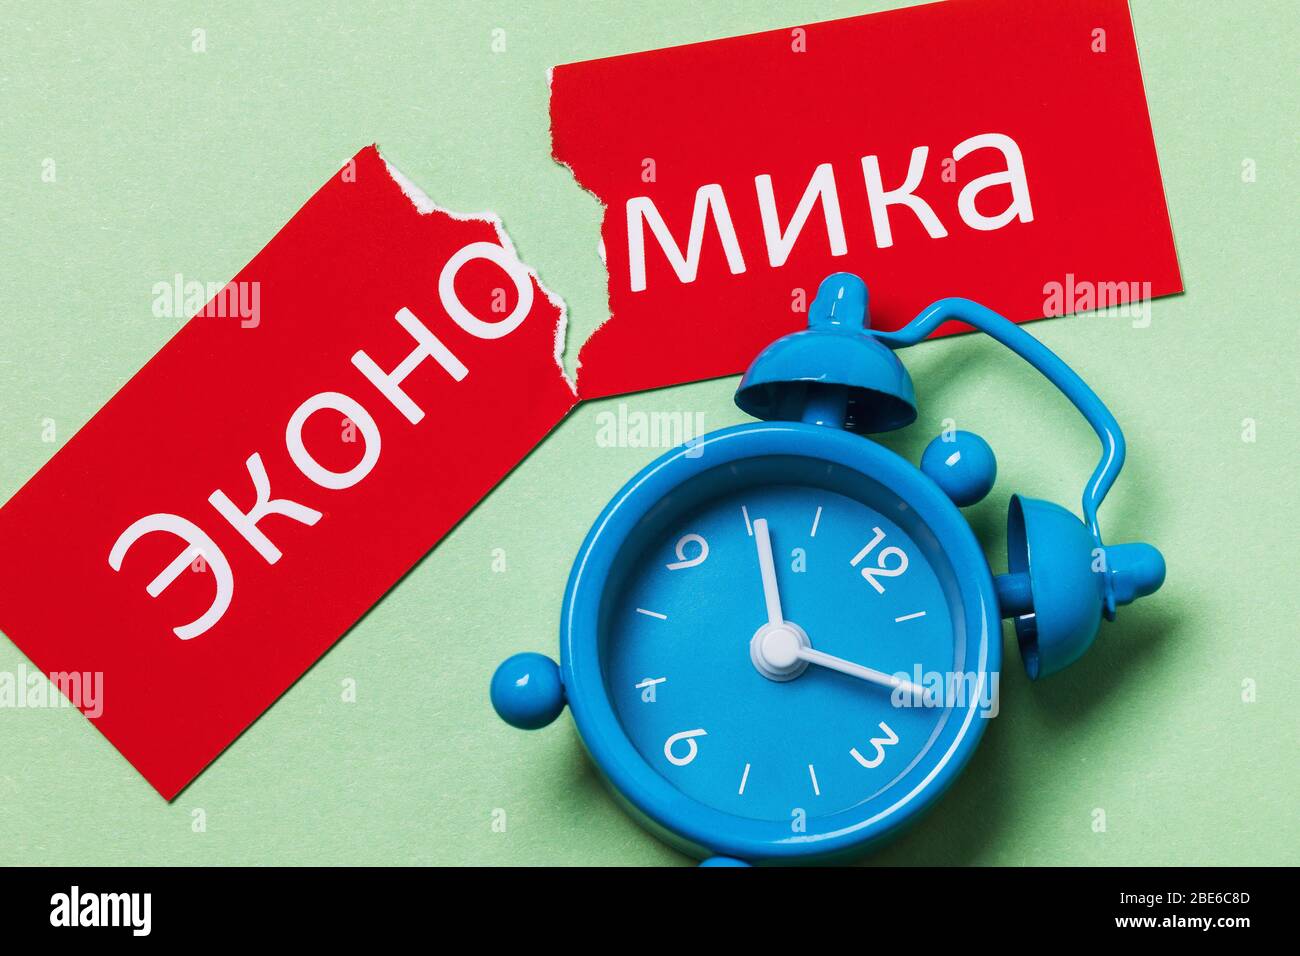 Text auf Russisch: Wirtschaft. Konzept zum Thema der wirtschaftlichen Erholung Russlands Stockfoto